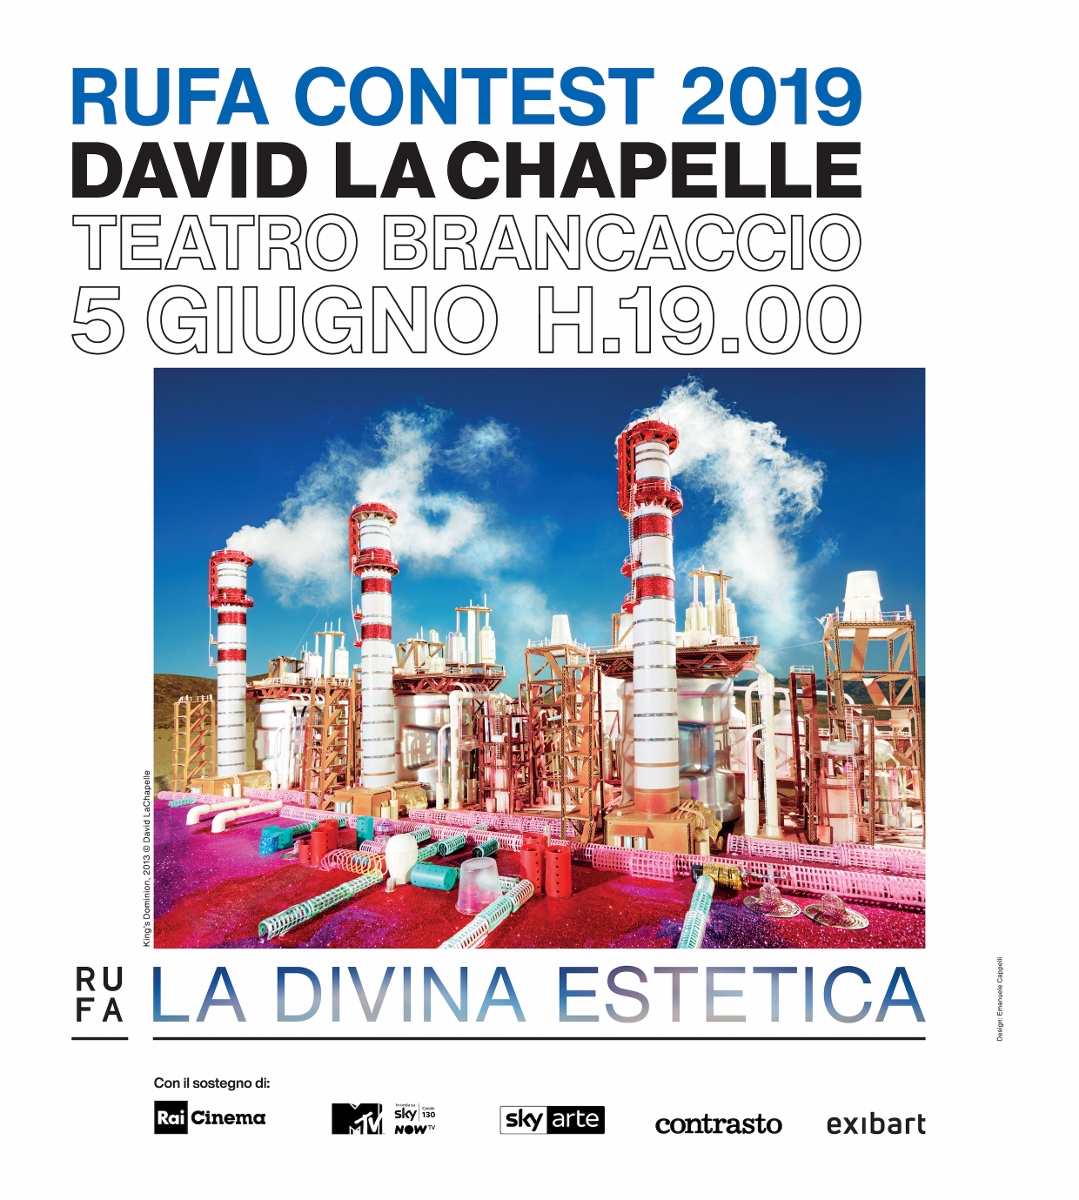 RUFA Contest 2019 - David LaChapelle